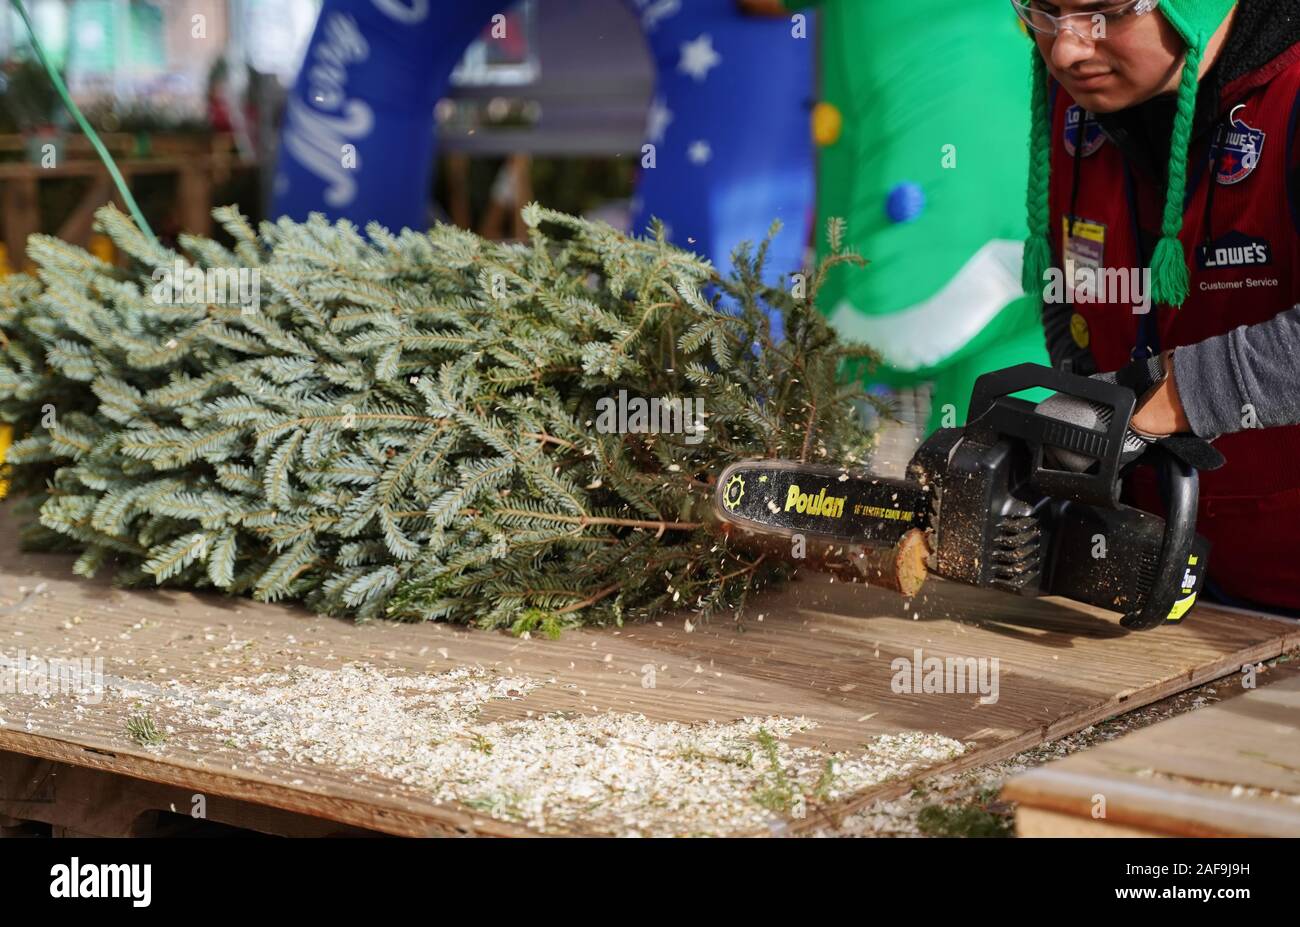 Cromwell, CT USA. Dec 2019. Tronçonneuse électrique en action pendant les vacances de Noël comme employé d'un magasin d'amélioration de l'arbre pour l'attente des enjoliveurs Banque D'Images